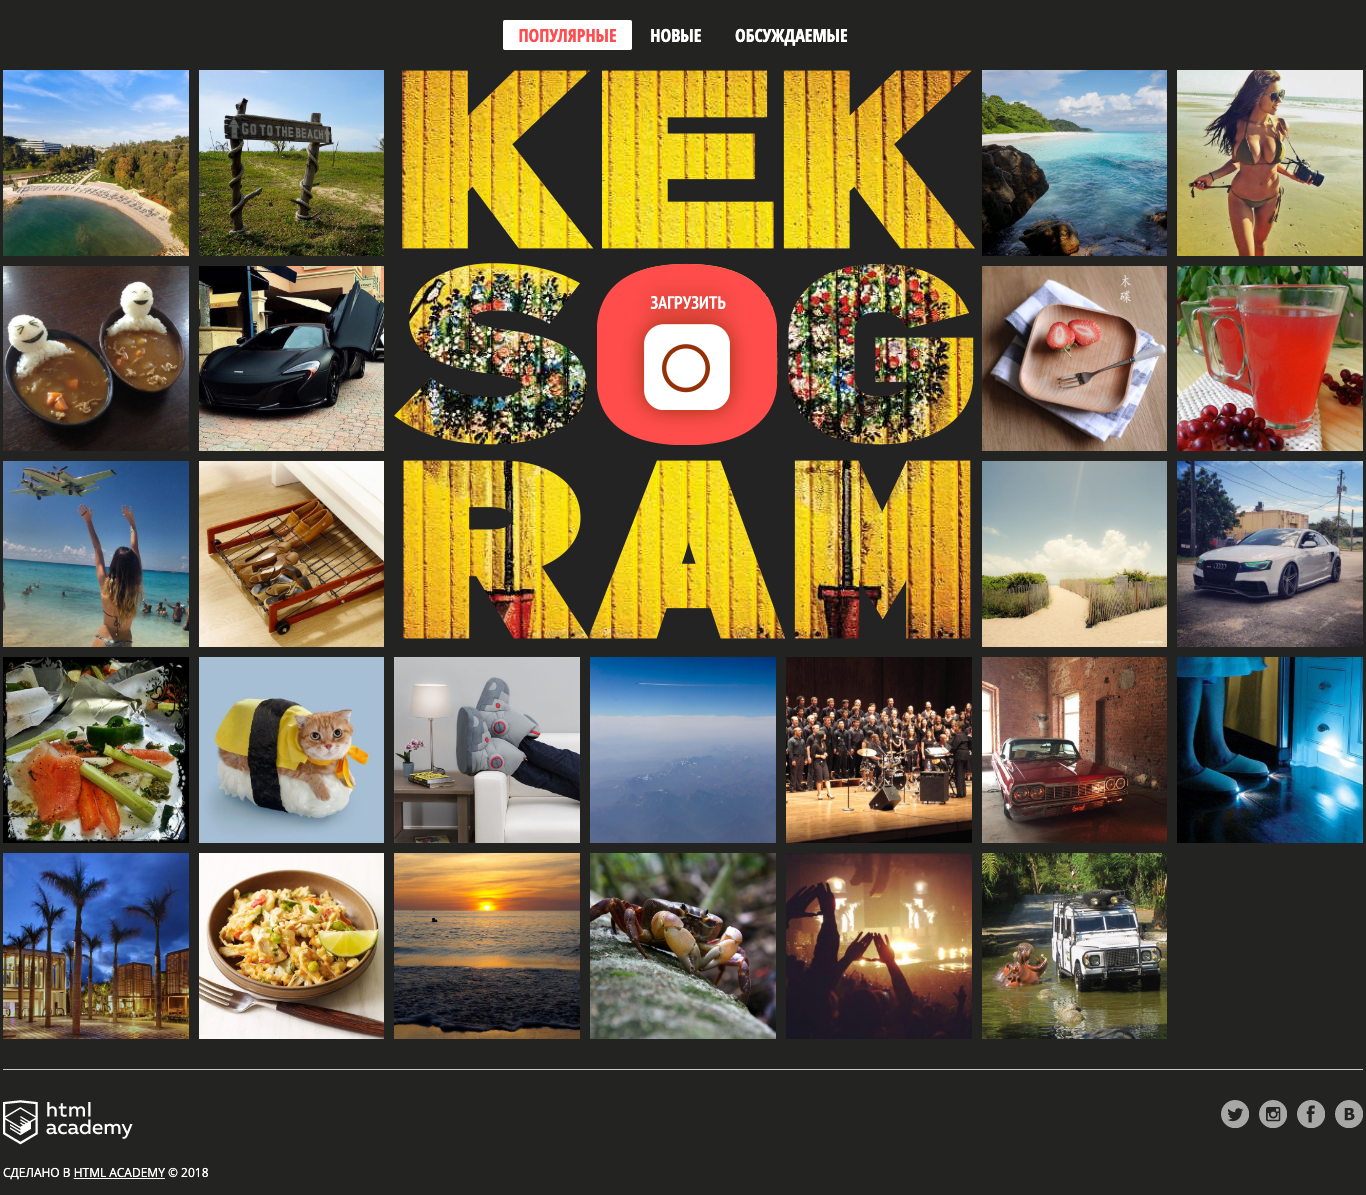 Kekstagram - сервис для обмена фотографиями и их редактирования